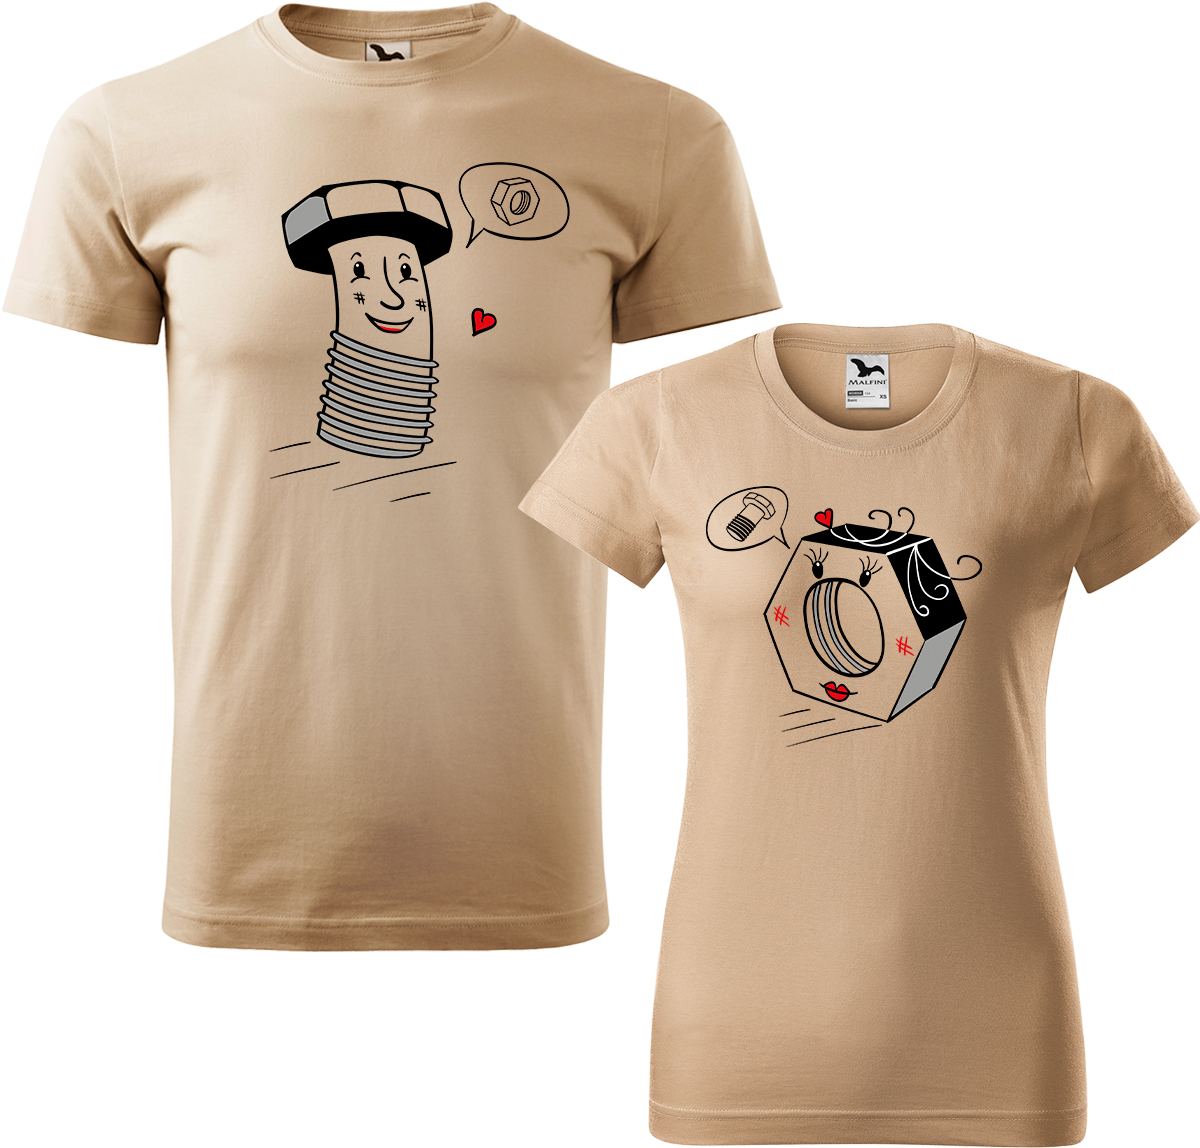 Trička pro páry - Šroubek a matička Barva: Písková (08), Velikost dámské tričko: XL, Velikost pánské tričko: XL